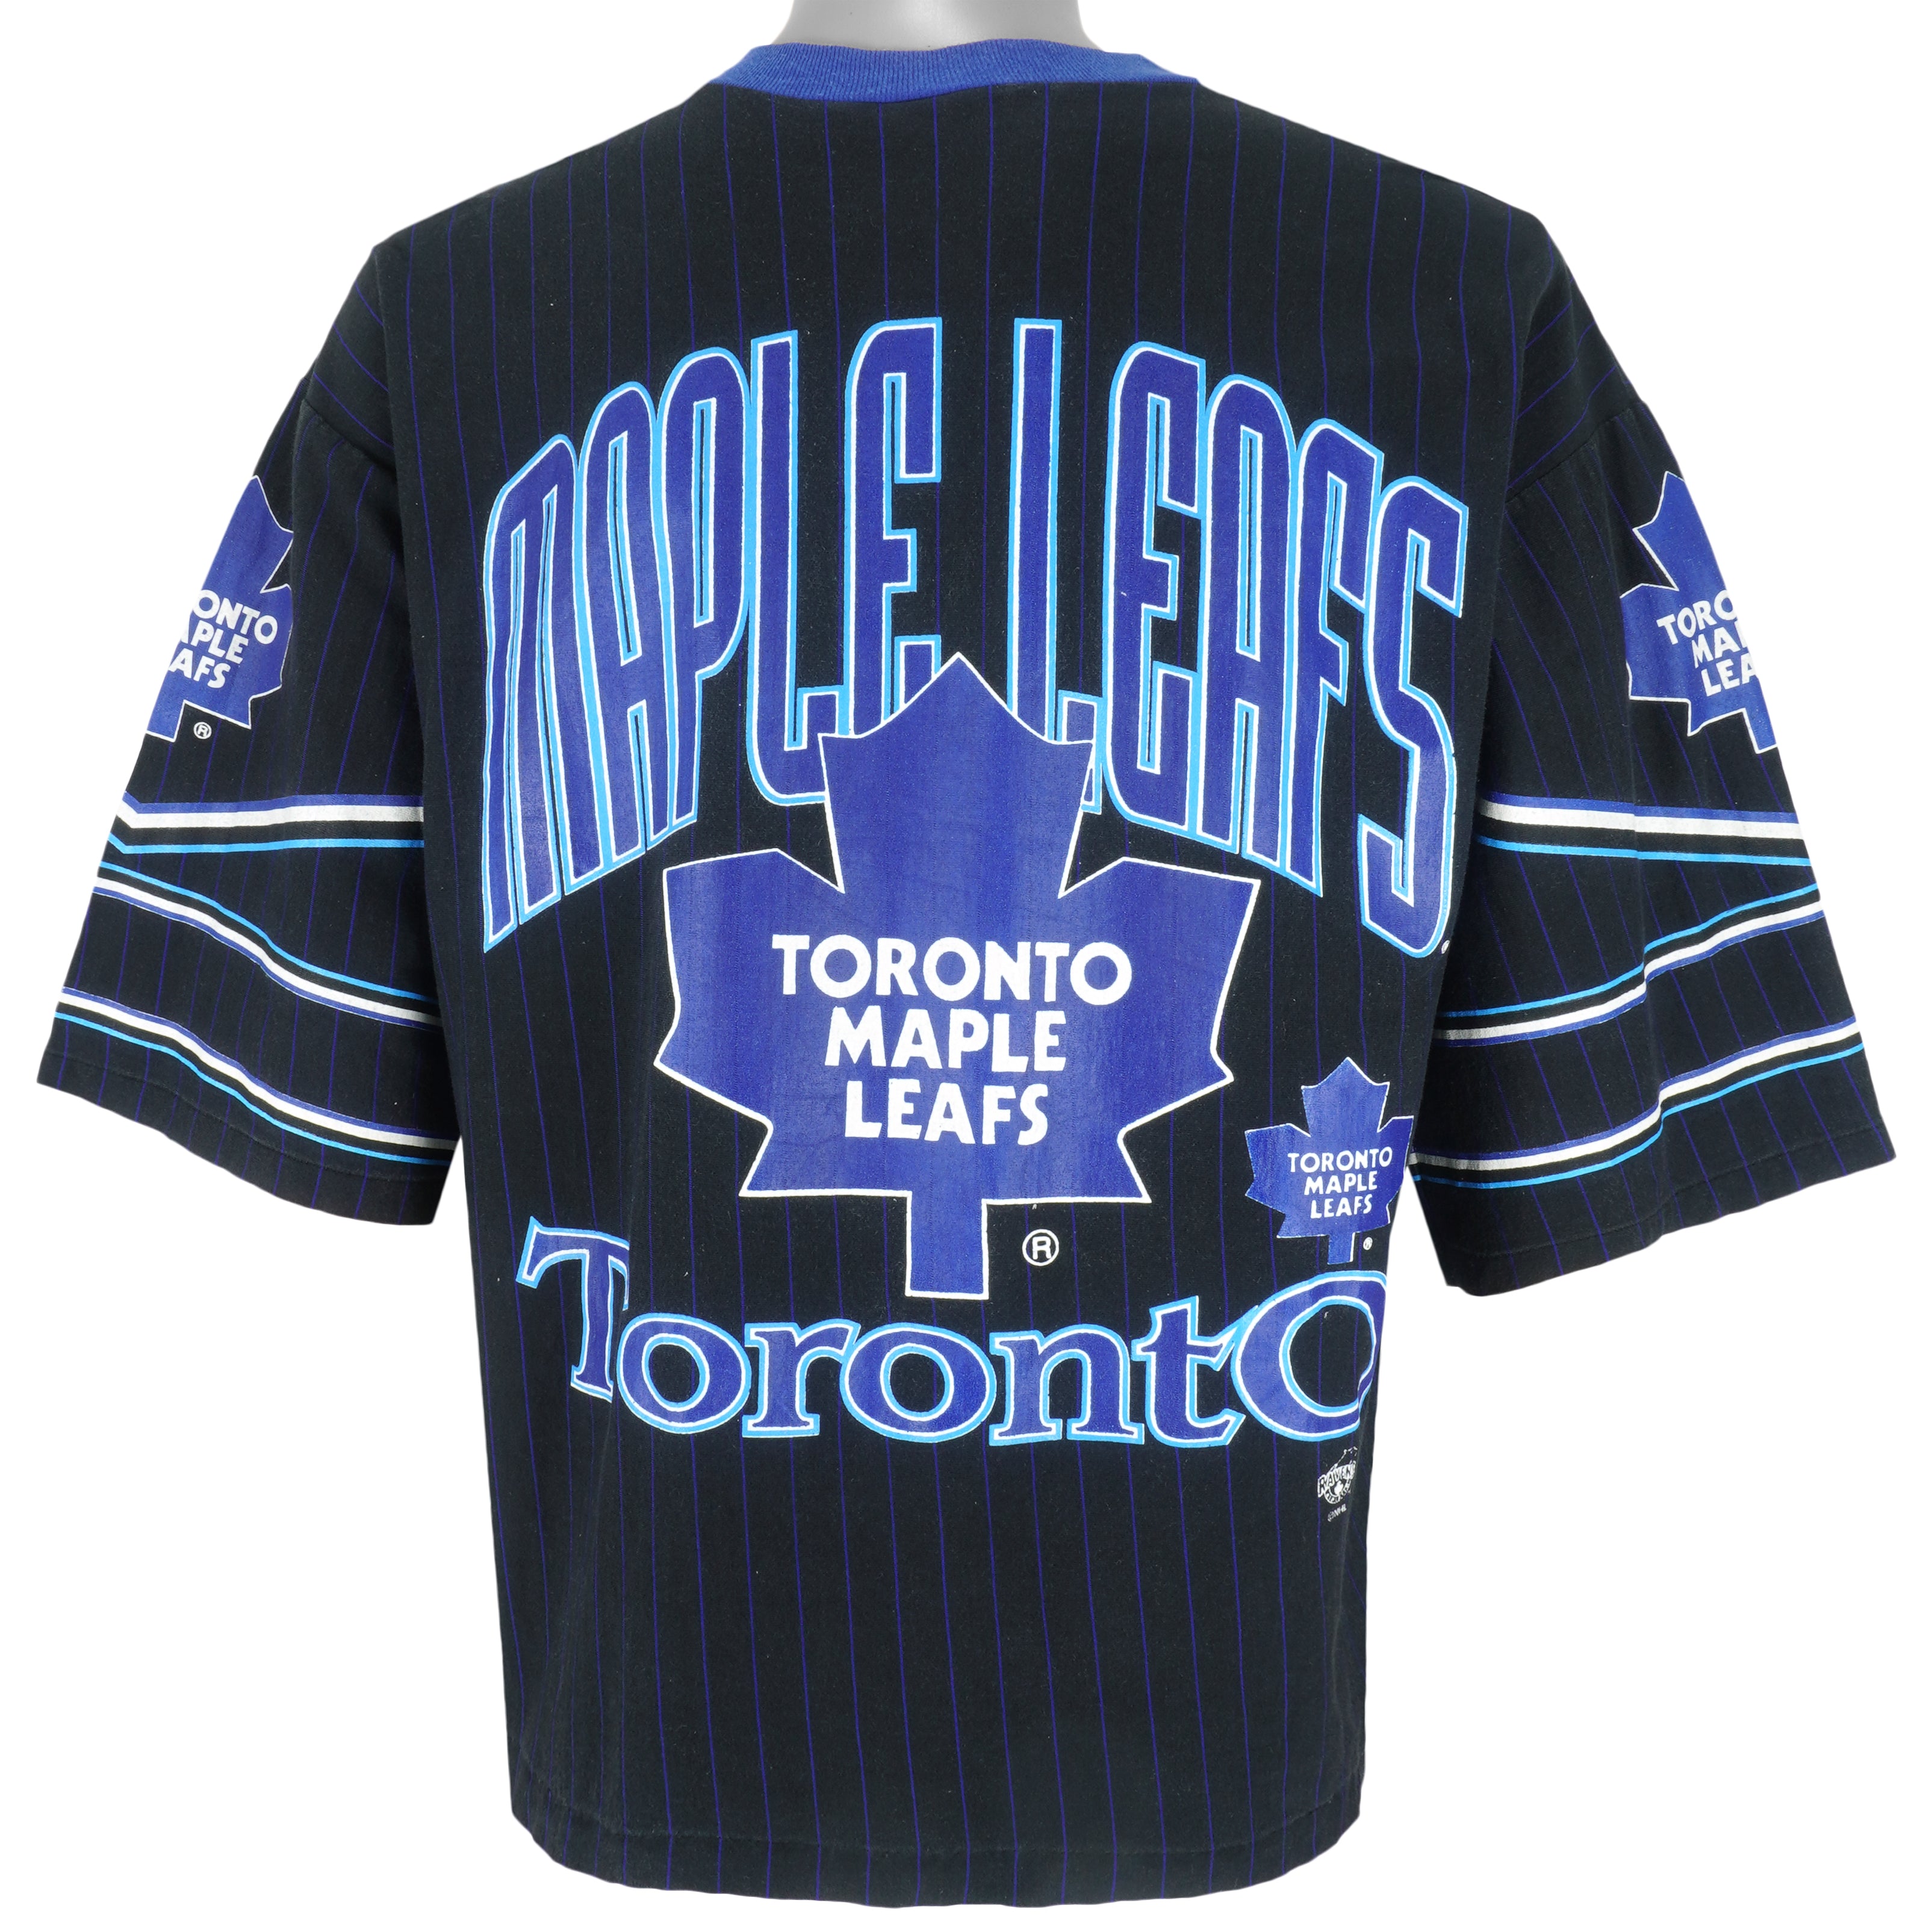 Toronto Maple Leafs Gear, Maple Leafs Jerseys, Maple Leafs Pro Shop, Maple  Leafs Hockey Apparel